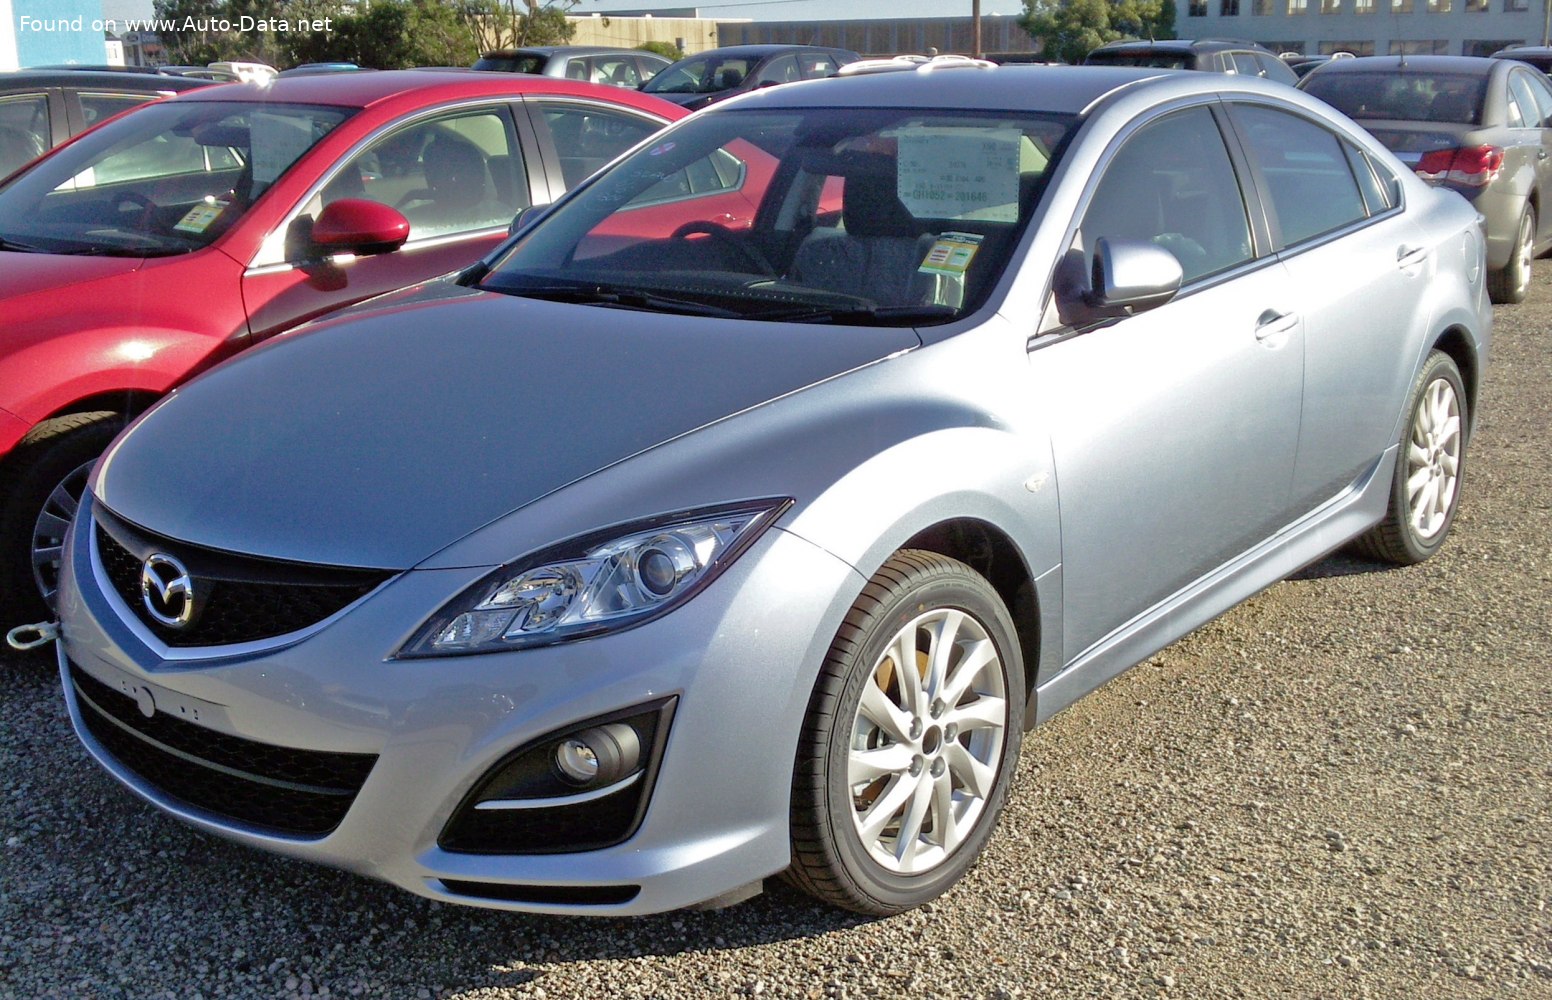 https://www.auto-data.net/images/f44/Mazda-6-II-Sedan-GH-facelift-2010.jpg